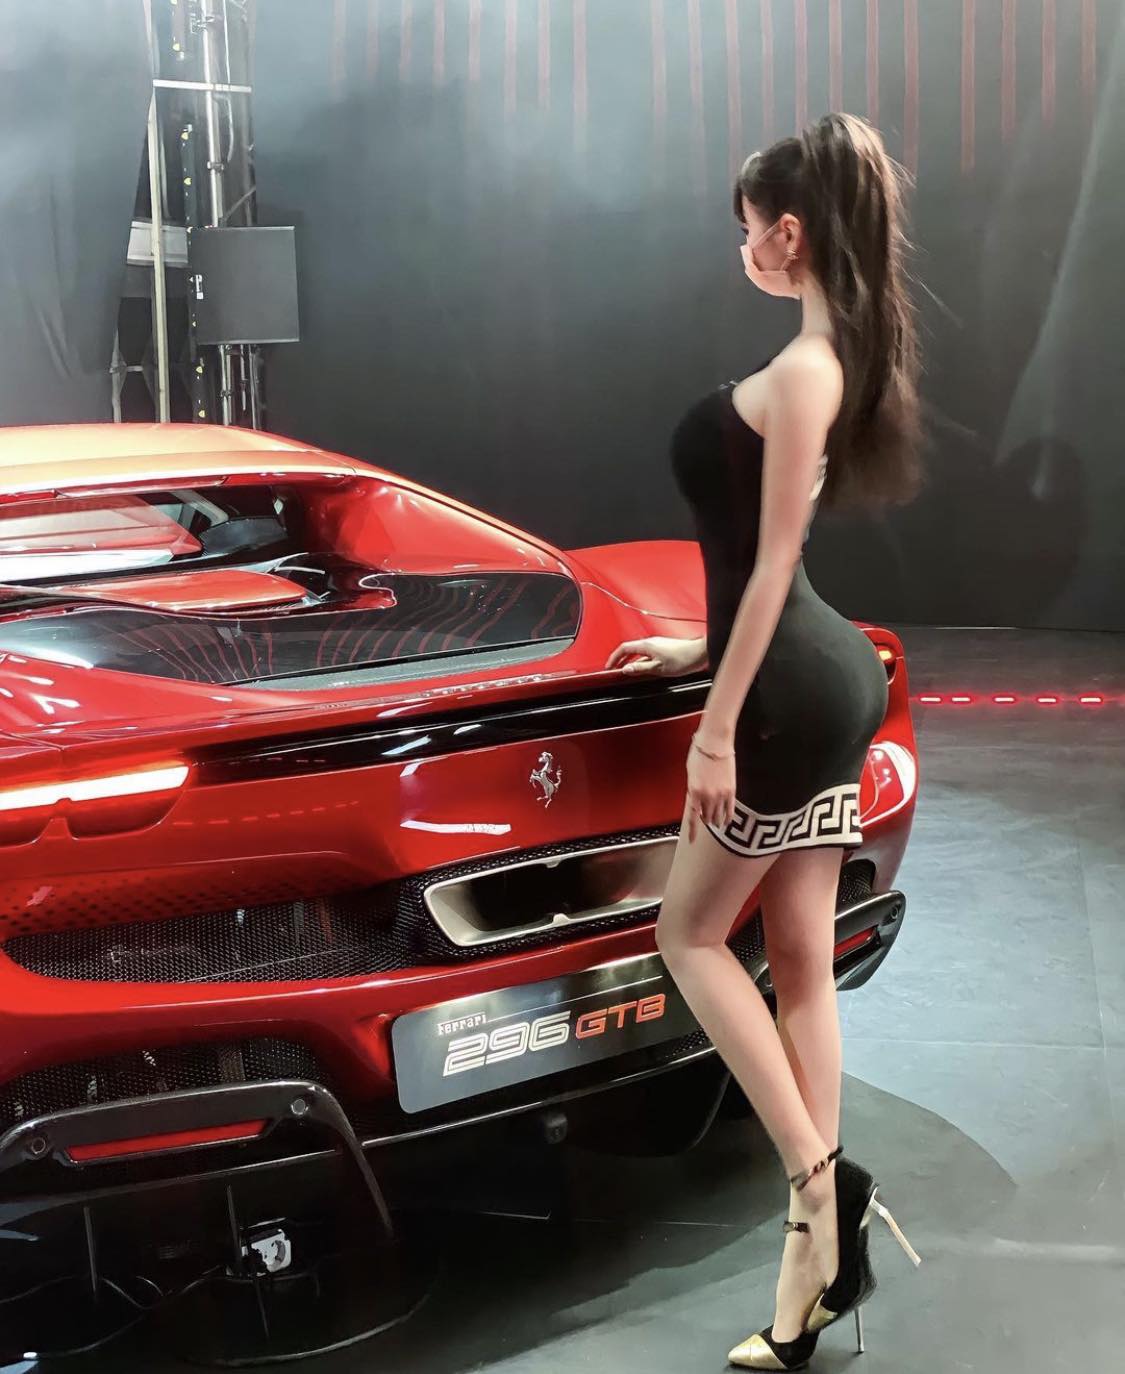 'Hot girl dược sỹ' làm 'lu mờ' siêu xe Ferrari 21 tỷ đồng nhờ sóng hình thể nóng bỏng - 2